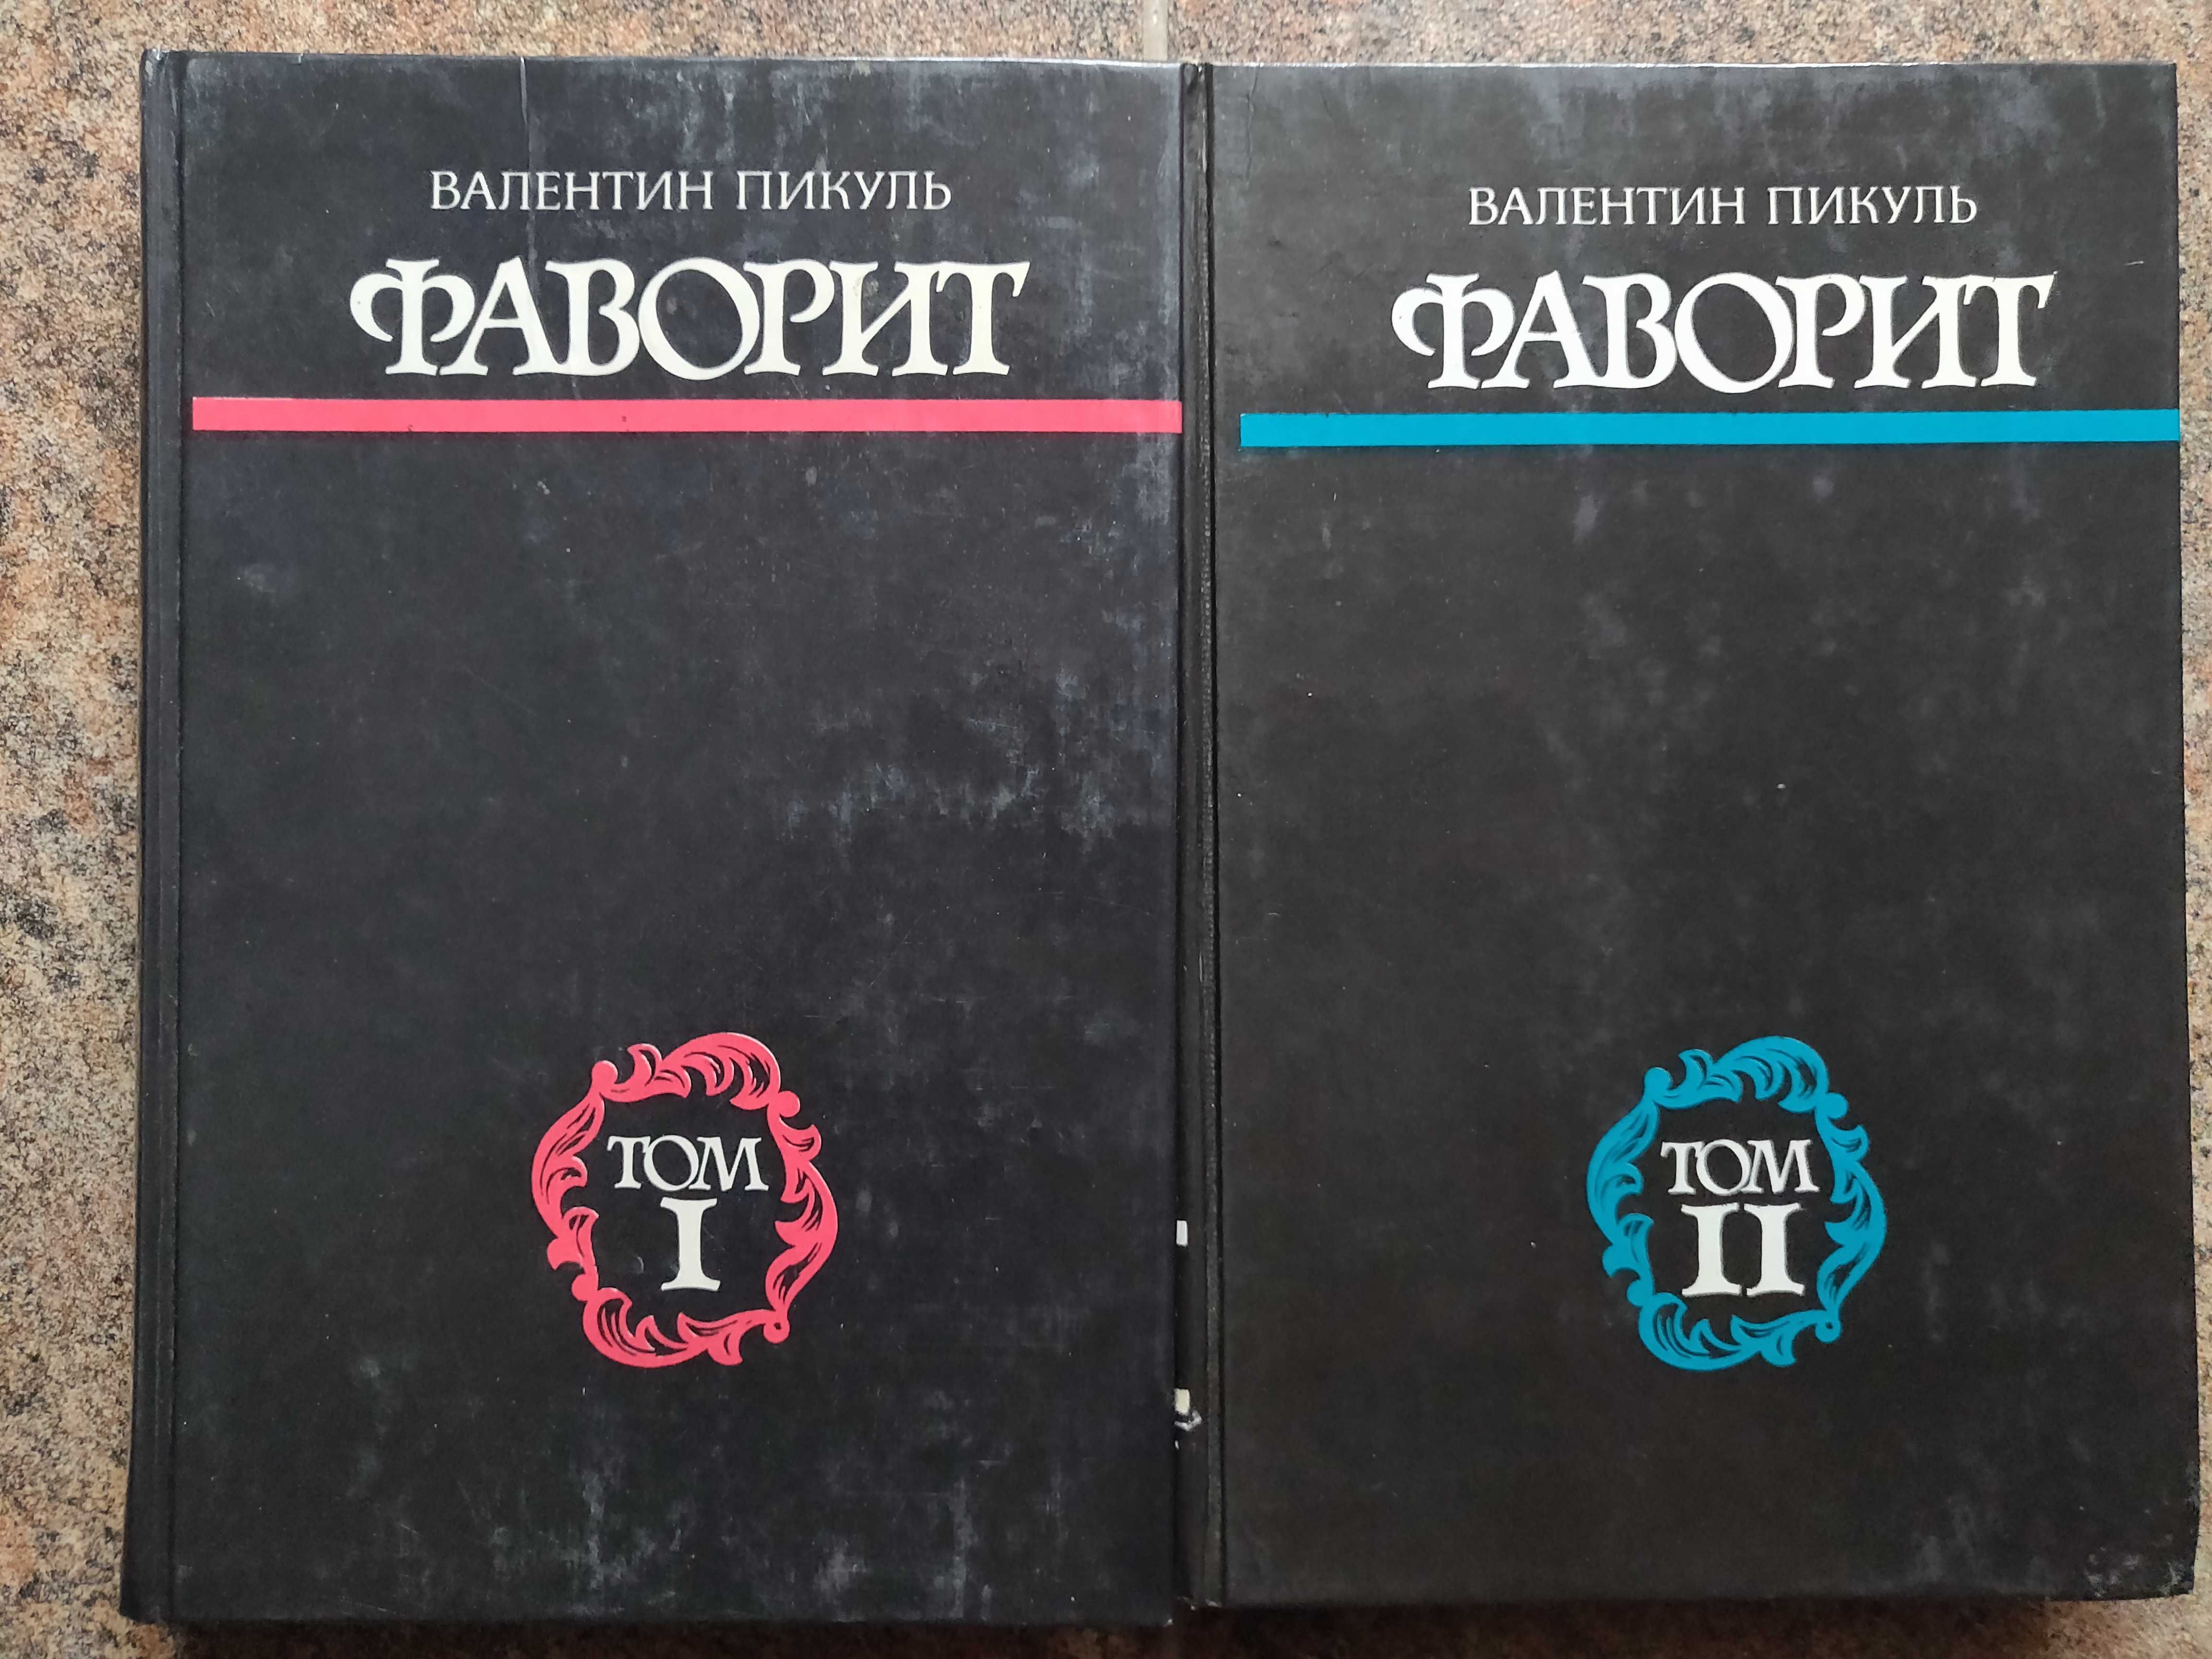 Валентин Пикуль. "Фаворит". 2 тома.